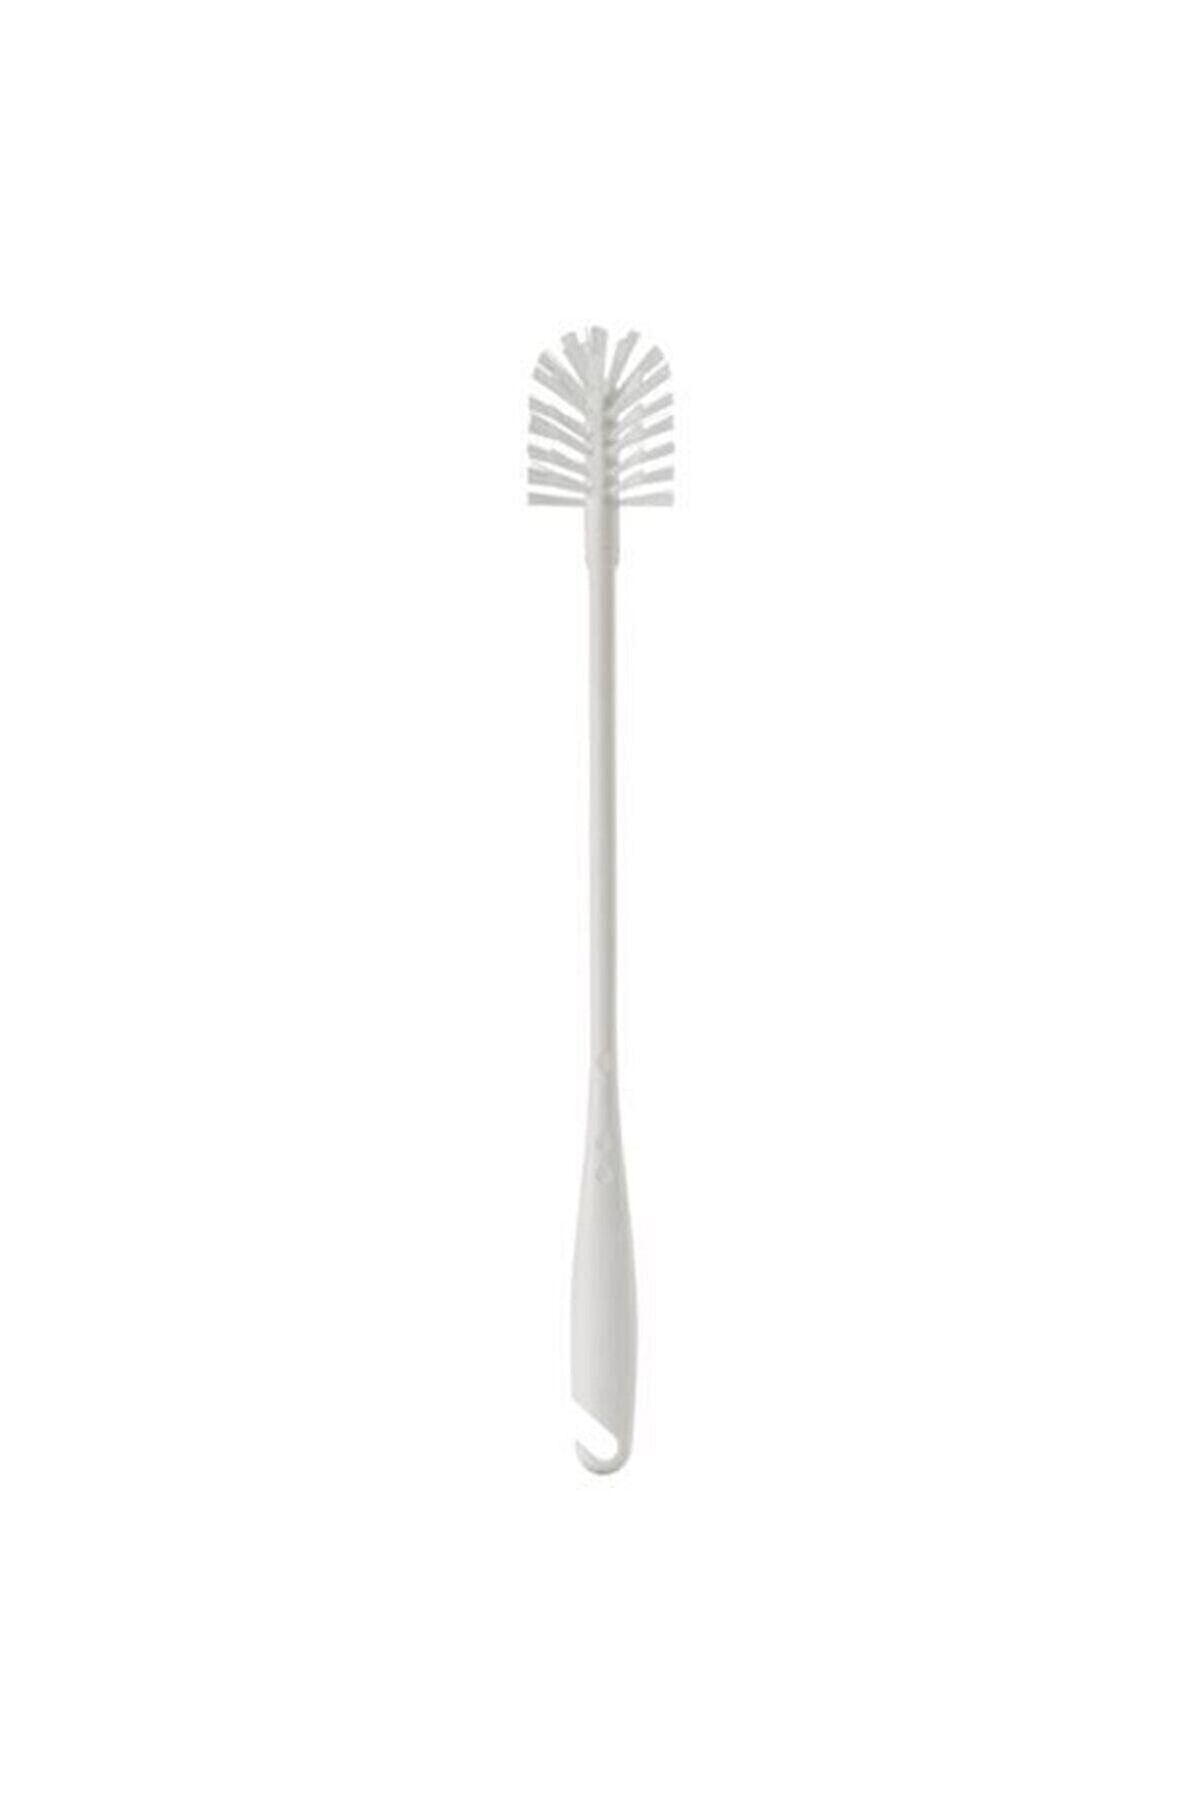 IKEA Medelvag Şişe Temizleme Fırçası, Beyaz